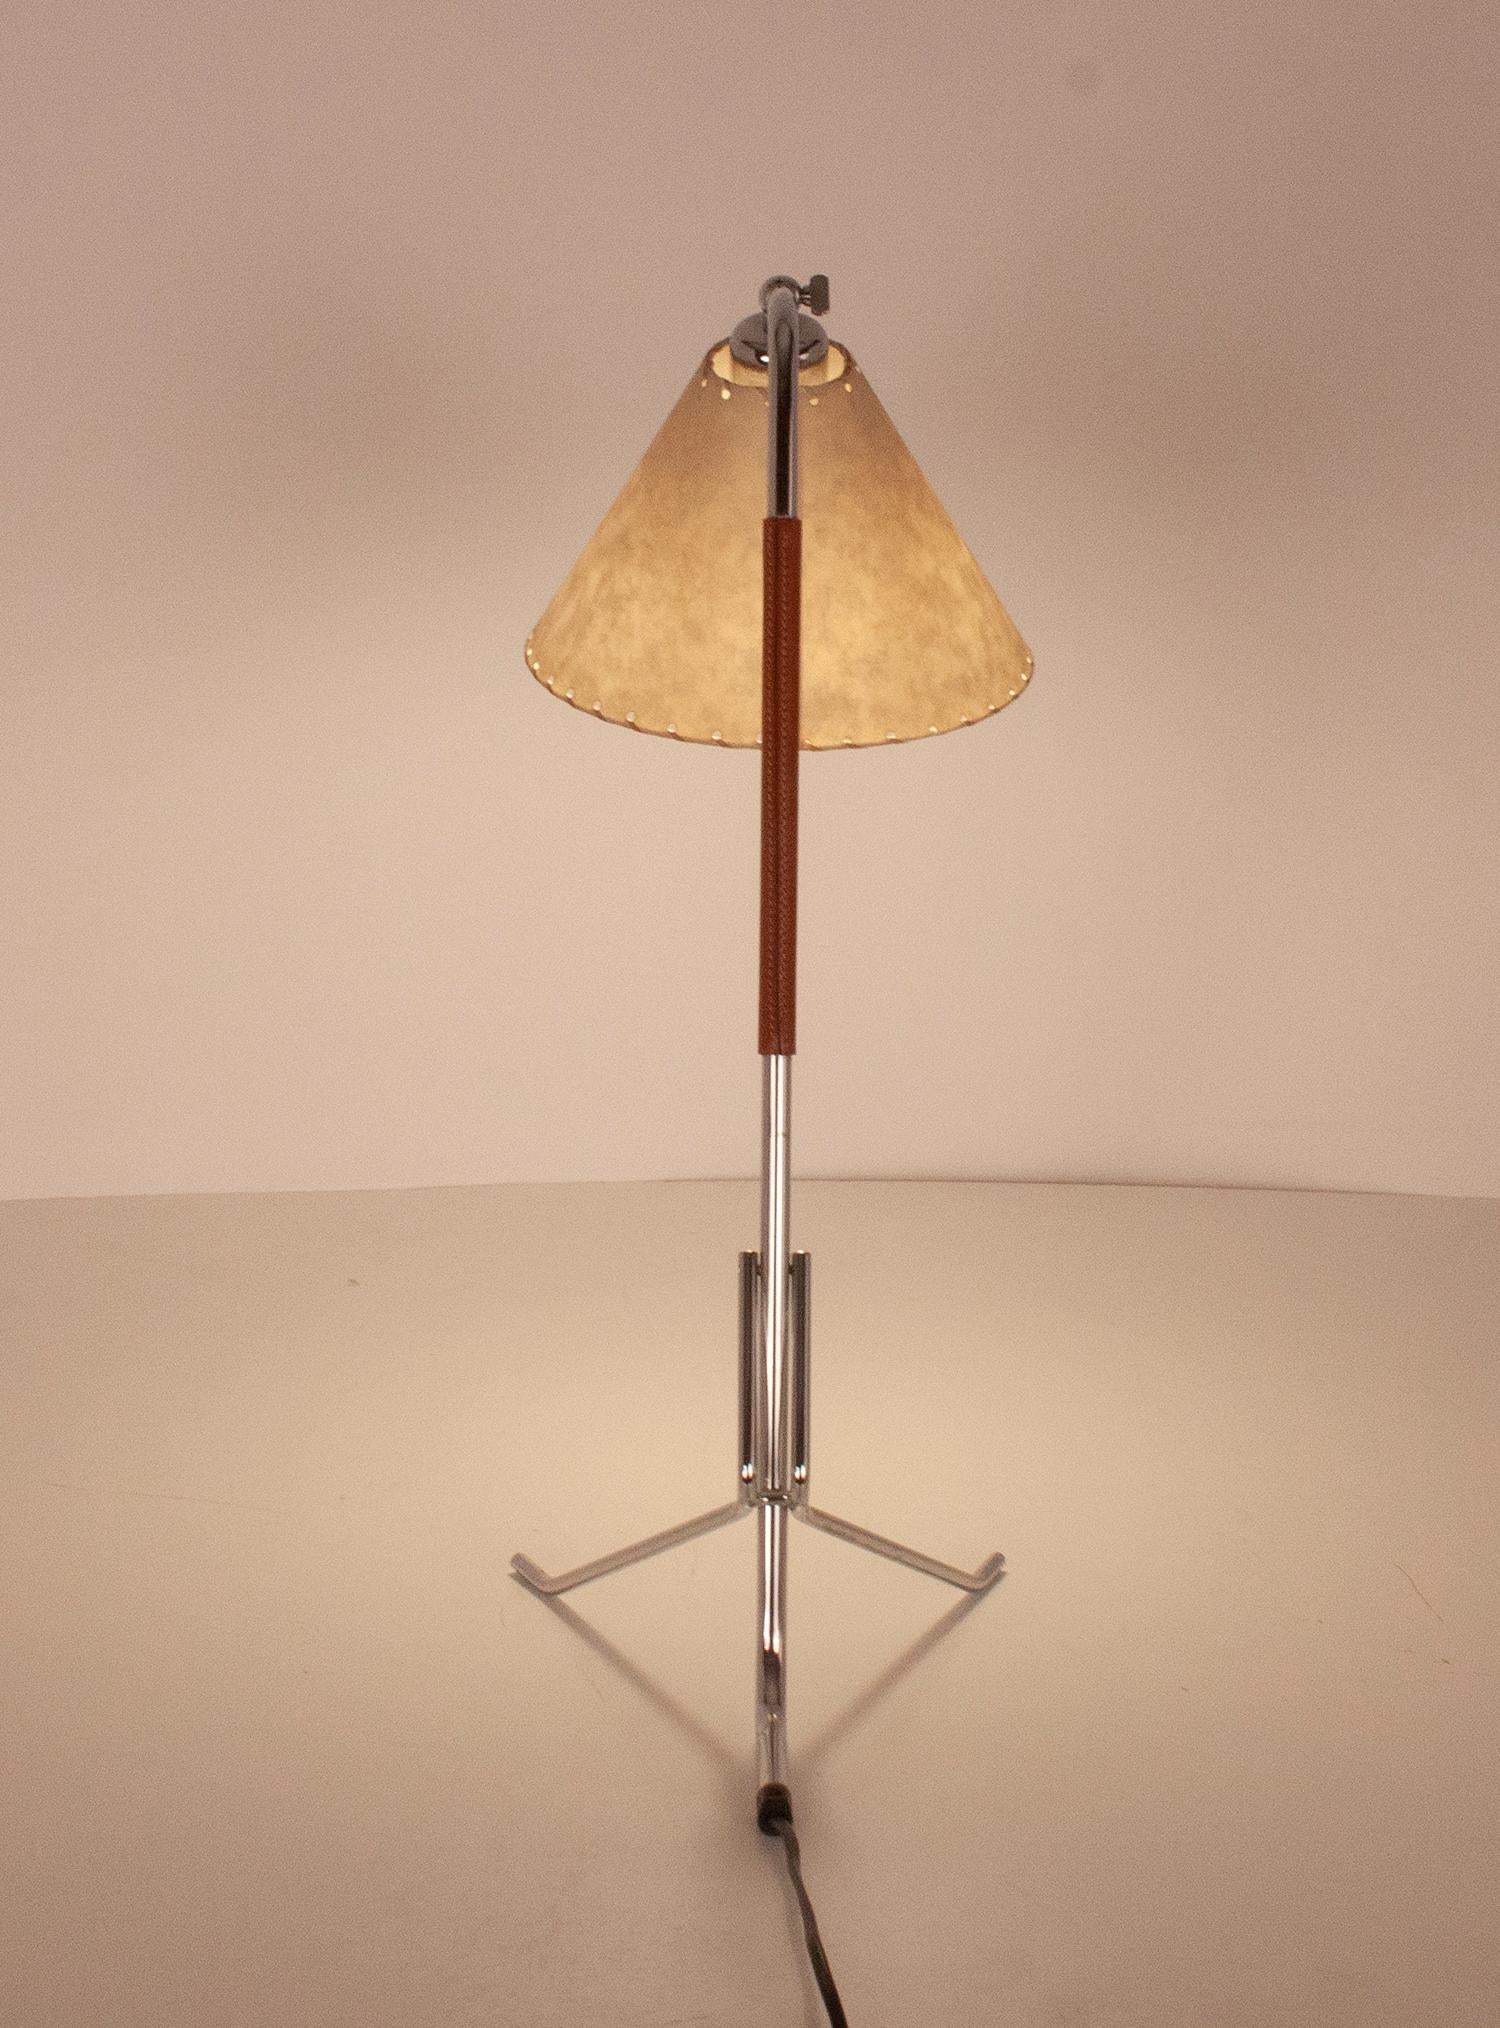 Late 20th Century Tripod Desk Lamp, designed by Pete Sans, Spain 1990's